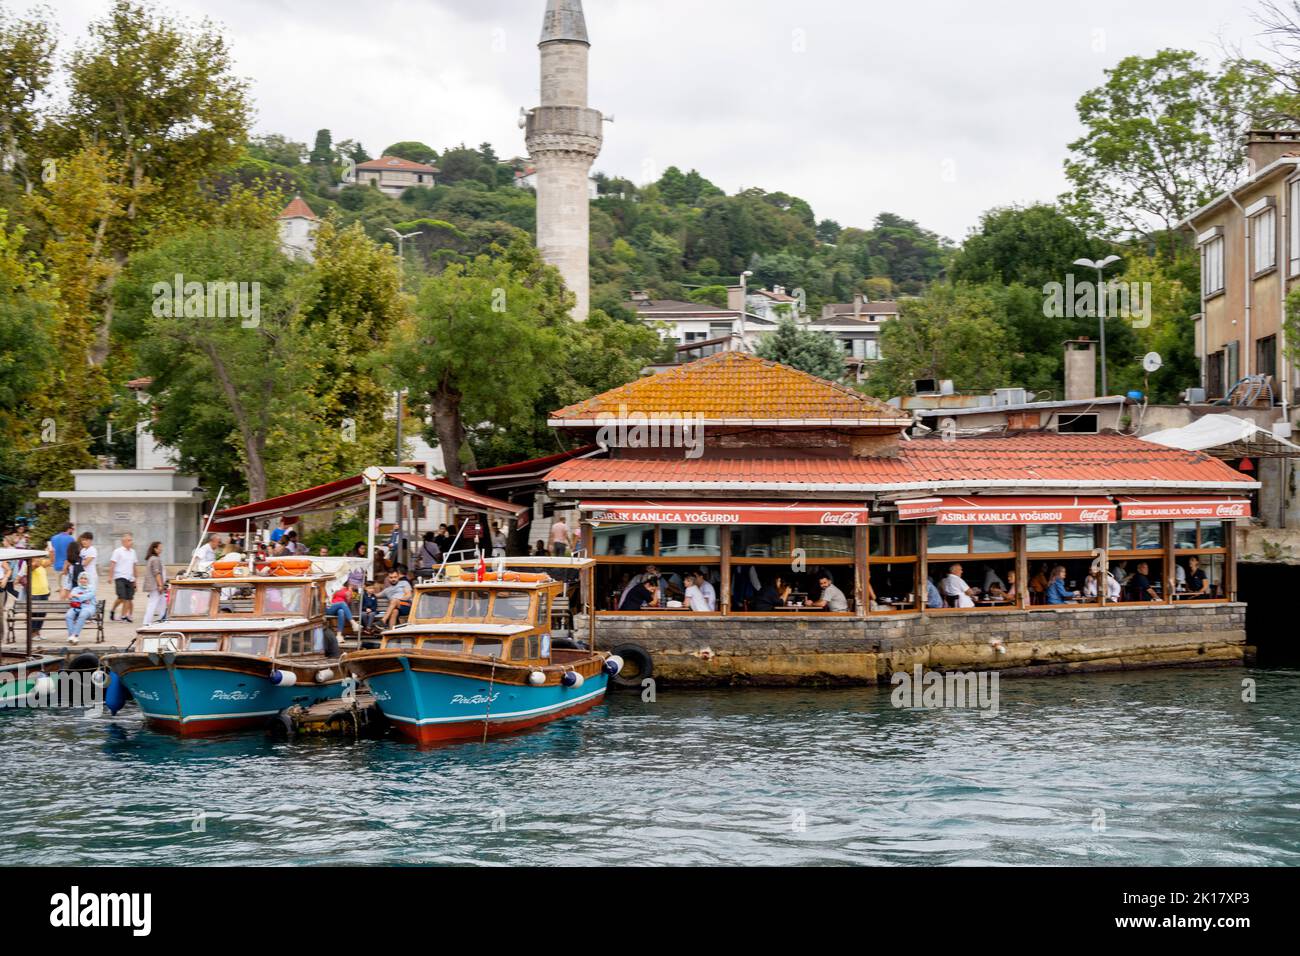 Türkei, Istanbul, Kanlica, Restaurant am Fähranleger Stockfoto